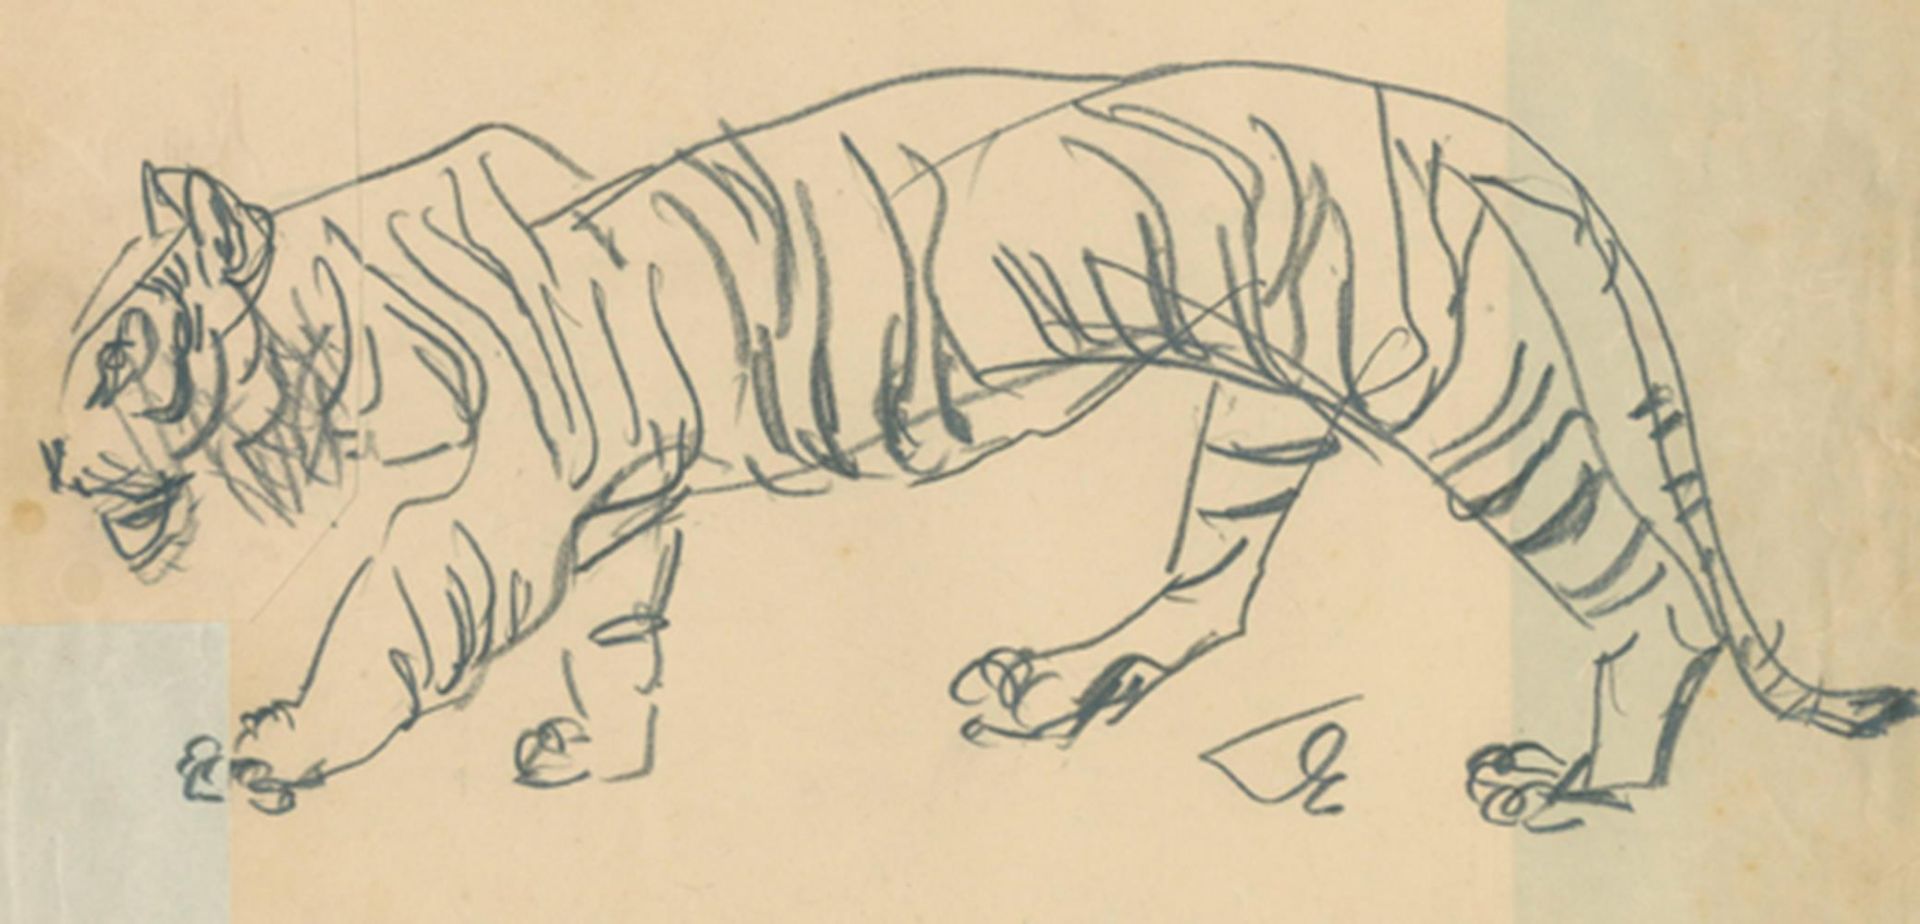 Dolbin,B.F.36 Bl. mit Darstellungen von Tieren, davon 20 Bl. Vorzeichnungen von Illustrationen für